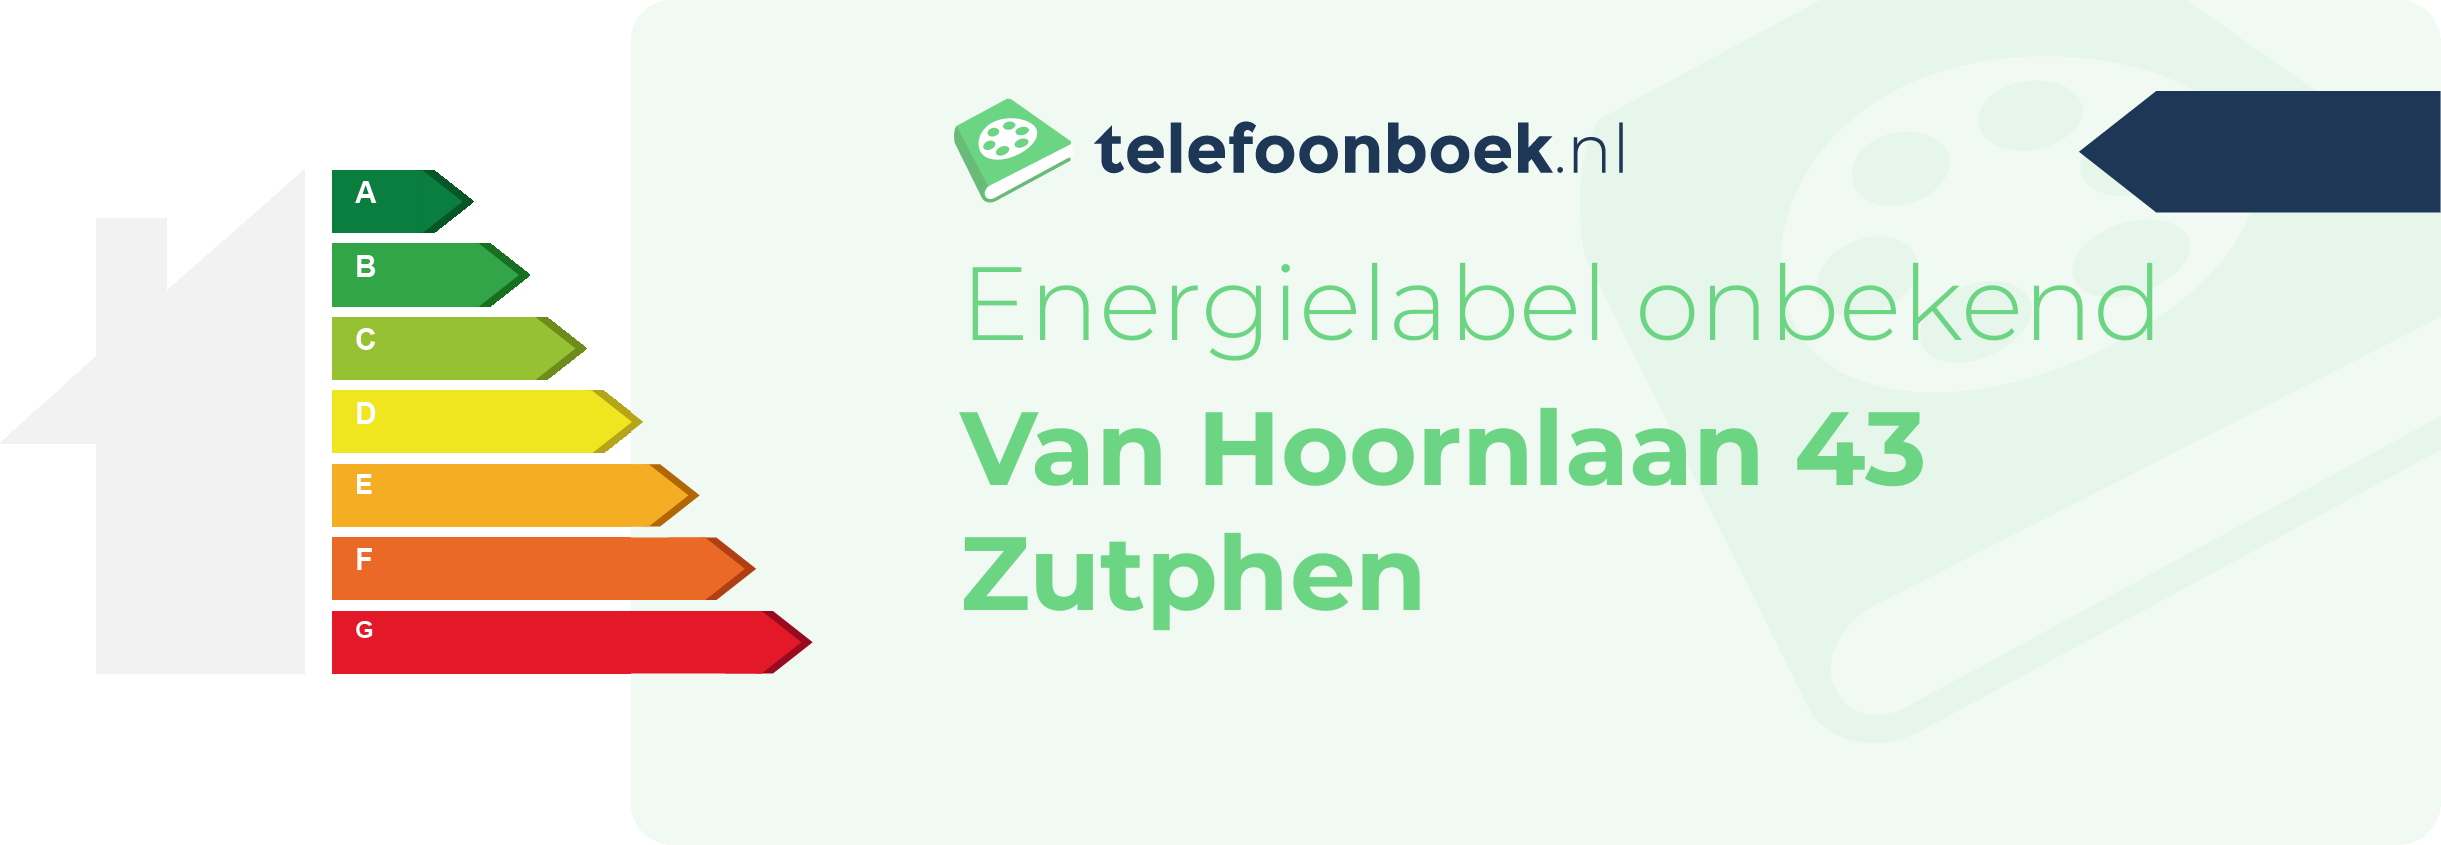 Energielabel Van Hoornlaan 43 Zutphen